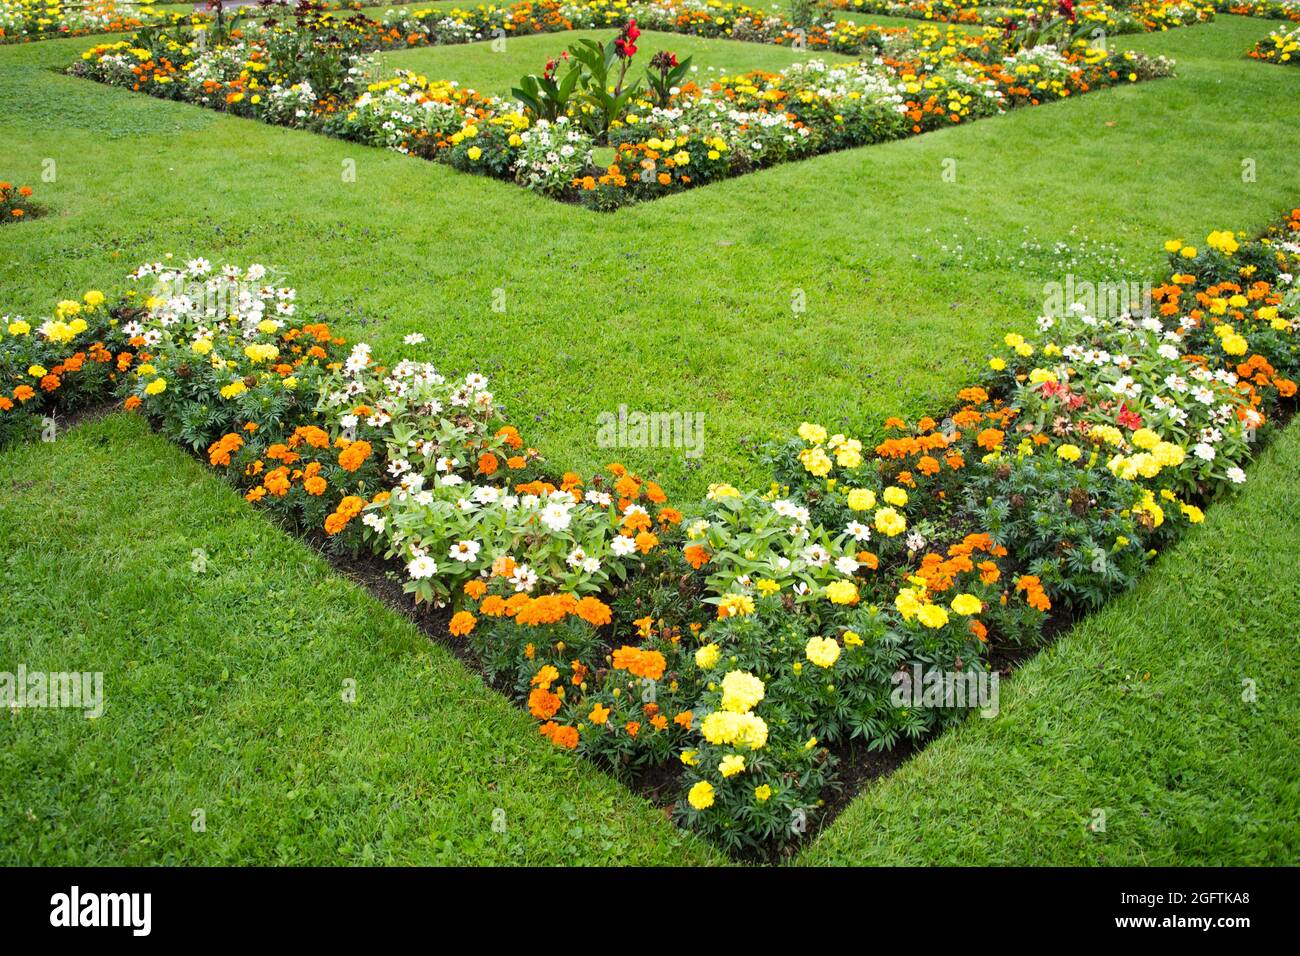 Schöner Garten mit grünem Gras und in Linien angeordneten bunten Blumenpflanzen Stockfoto